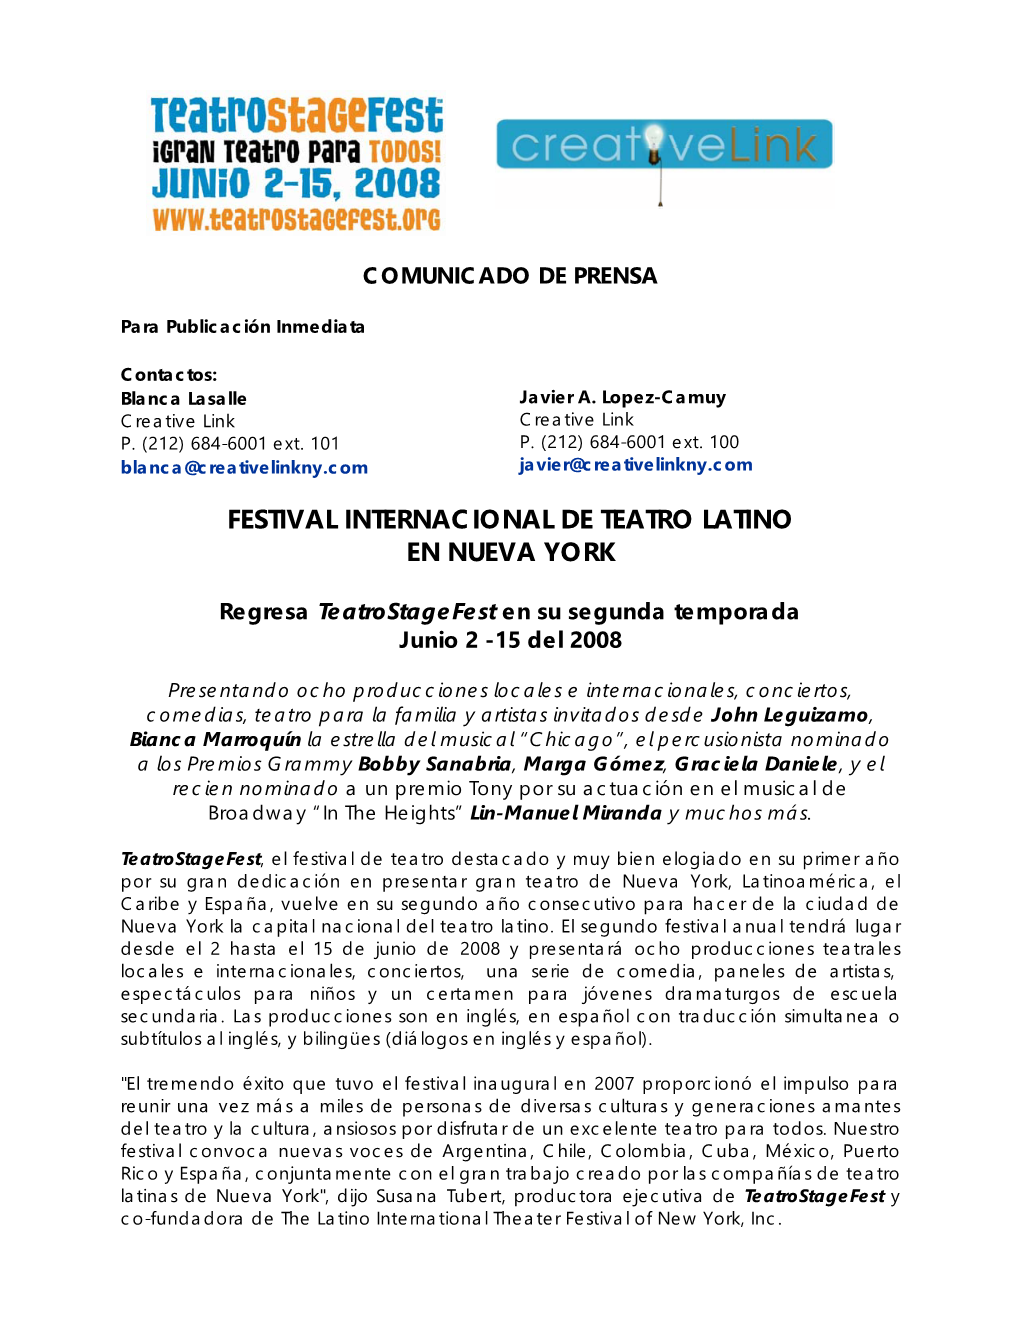 Festival Internacional De Teatro Latino En Nueva York